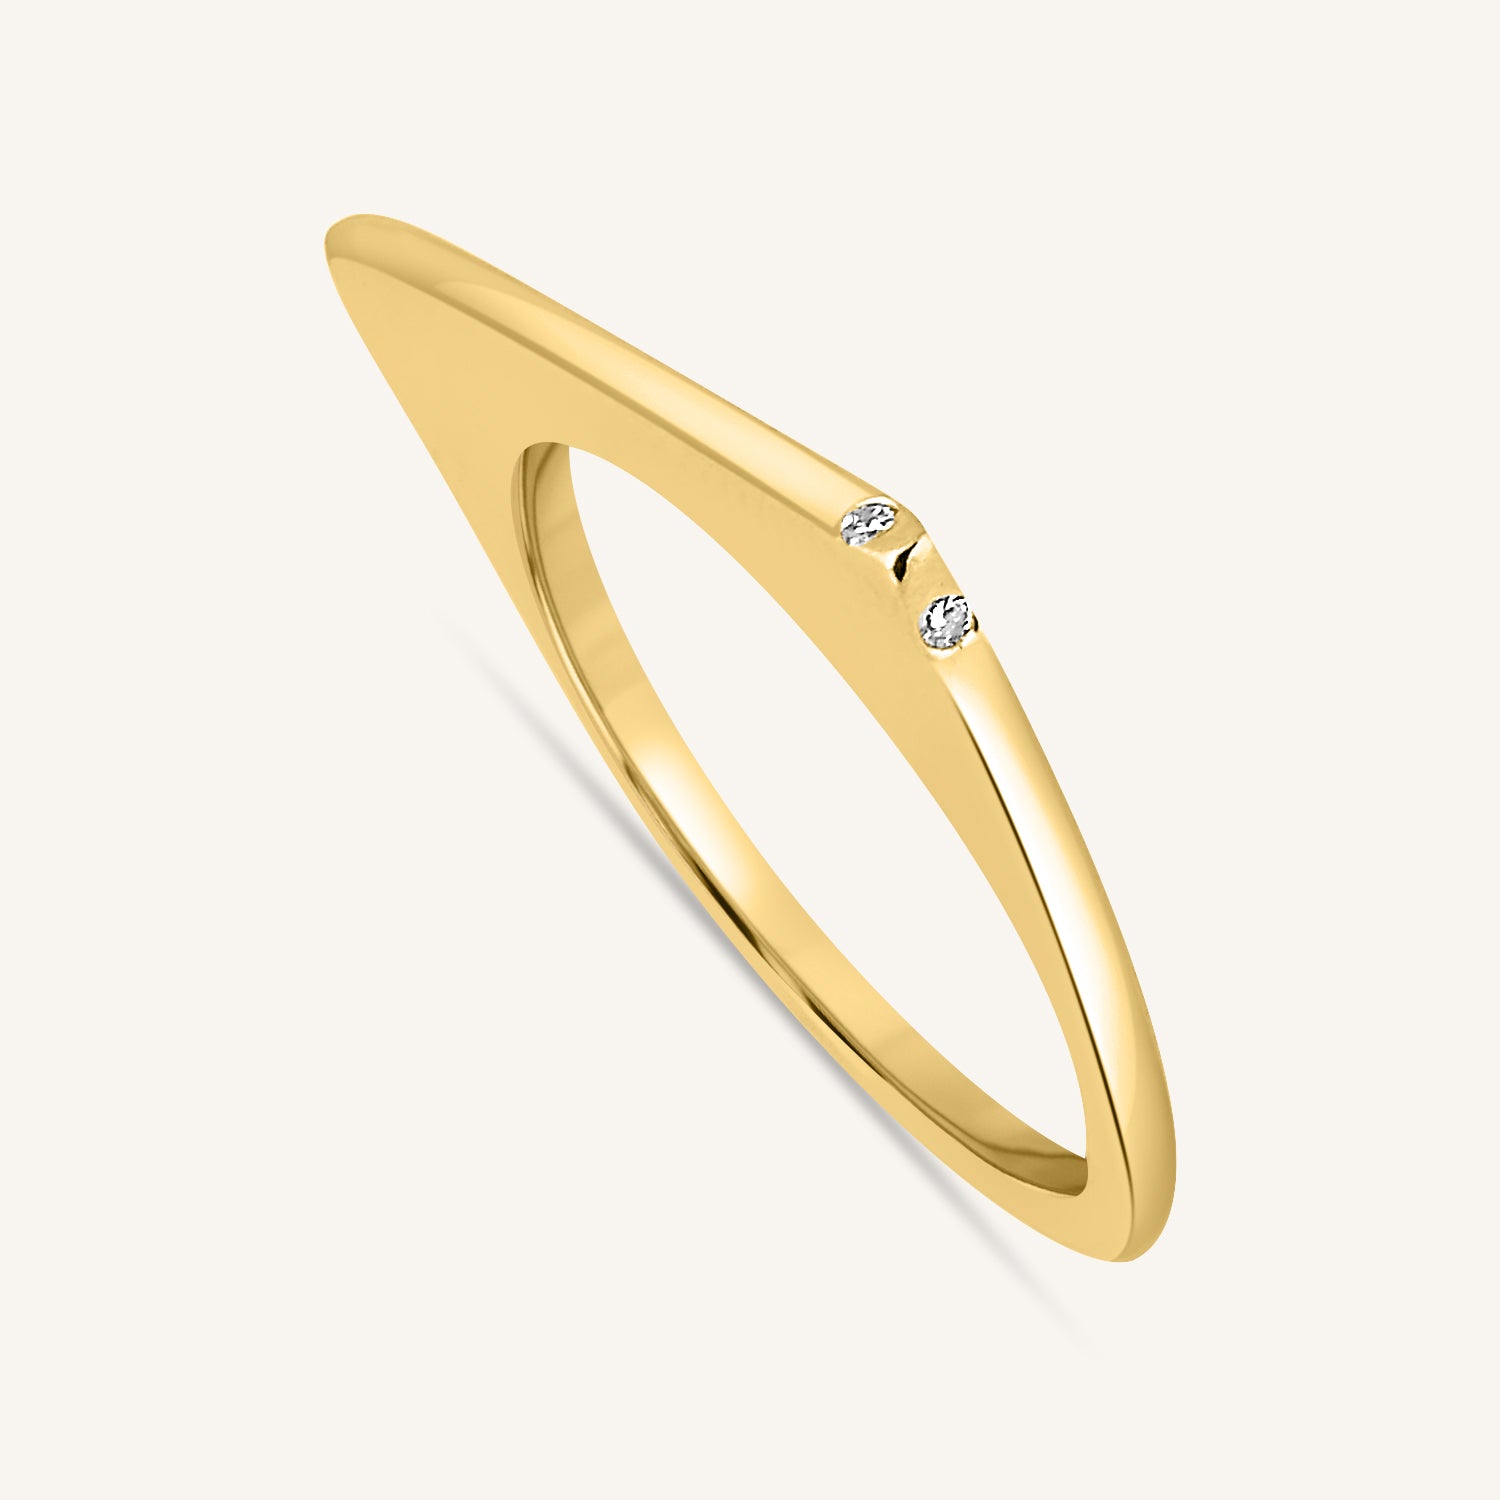 designer ring online - rings for women